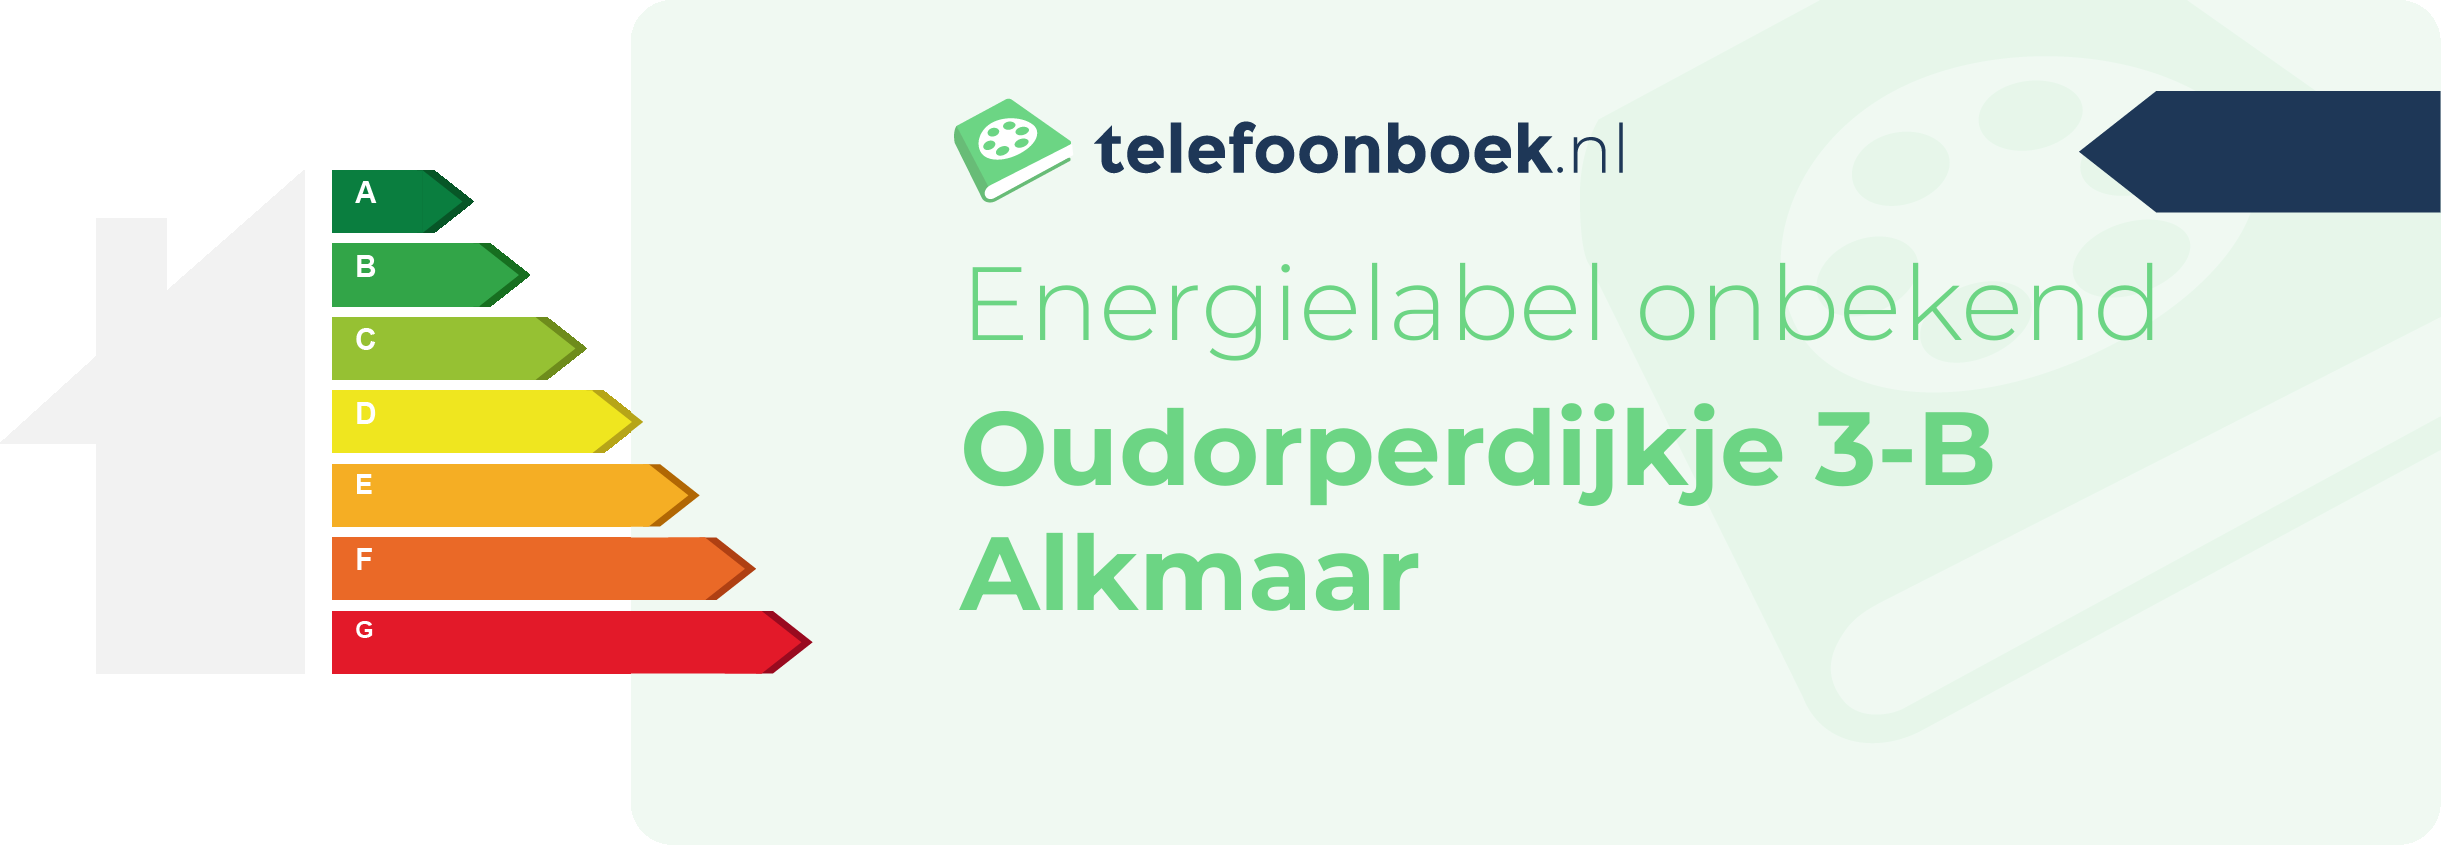 Energielabel Oudorperdijkje 3-B Alkmaar